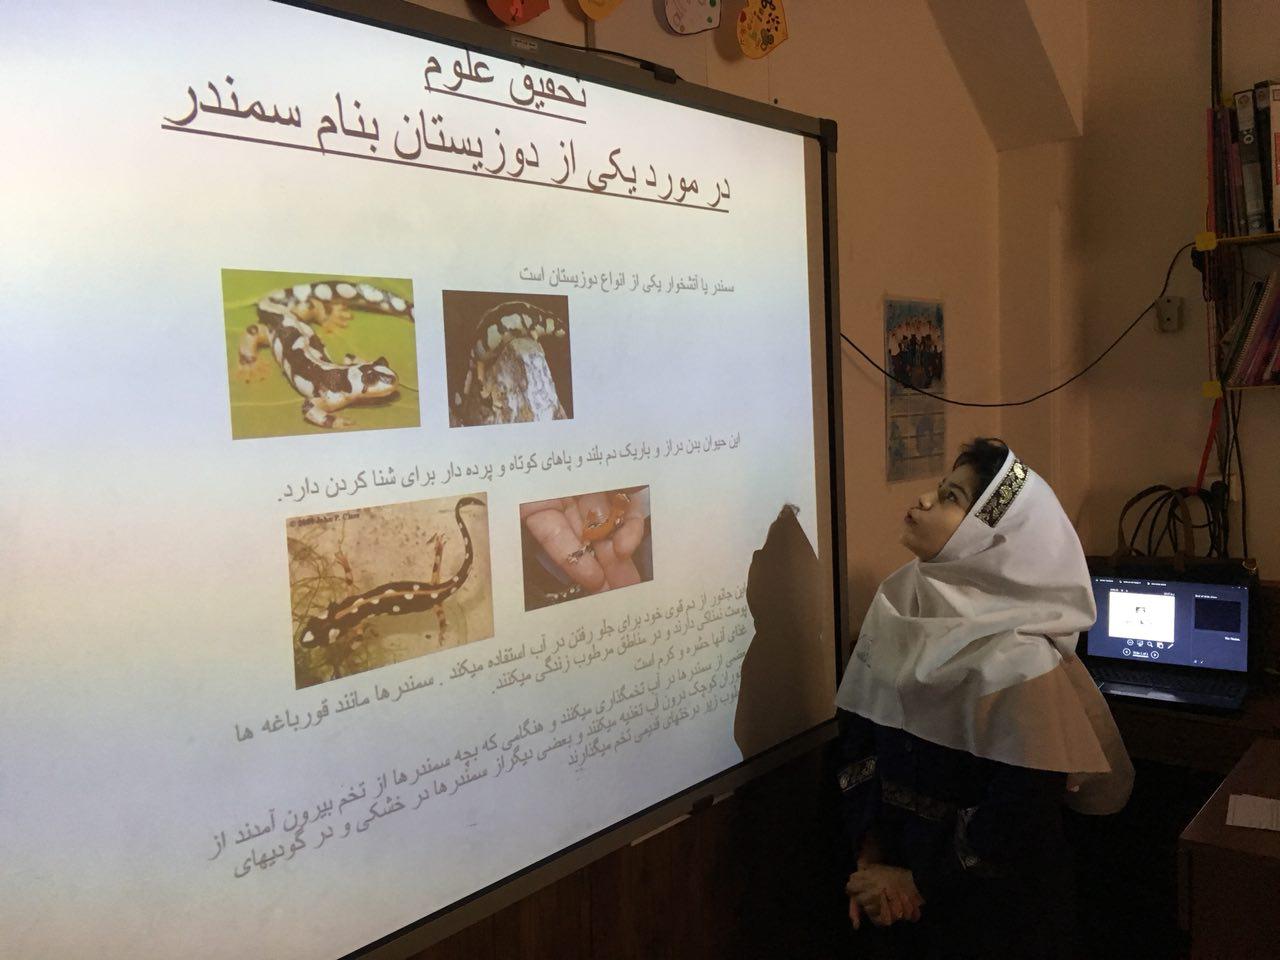 کنفرانس حسیبا امیدی و درسا ترسول در مورد قورباغه و سمندر دو نمونه از دوزیستان